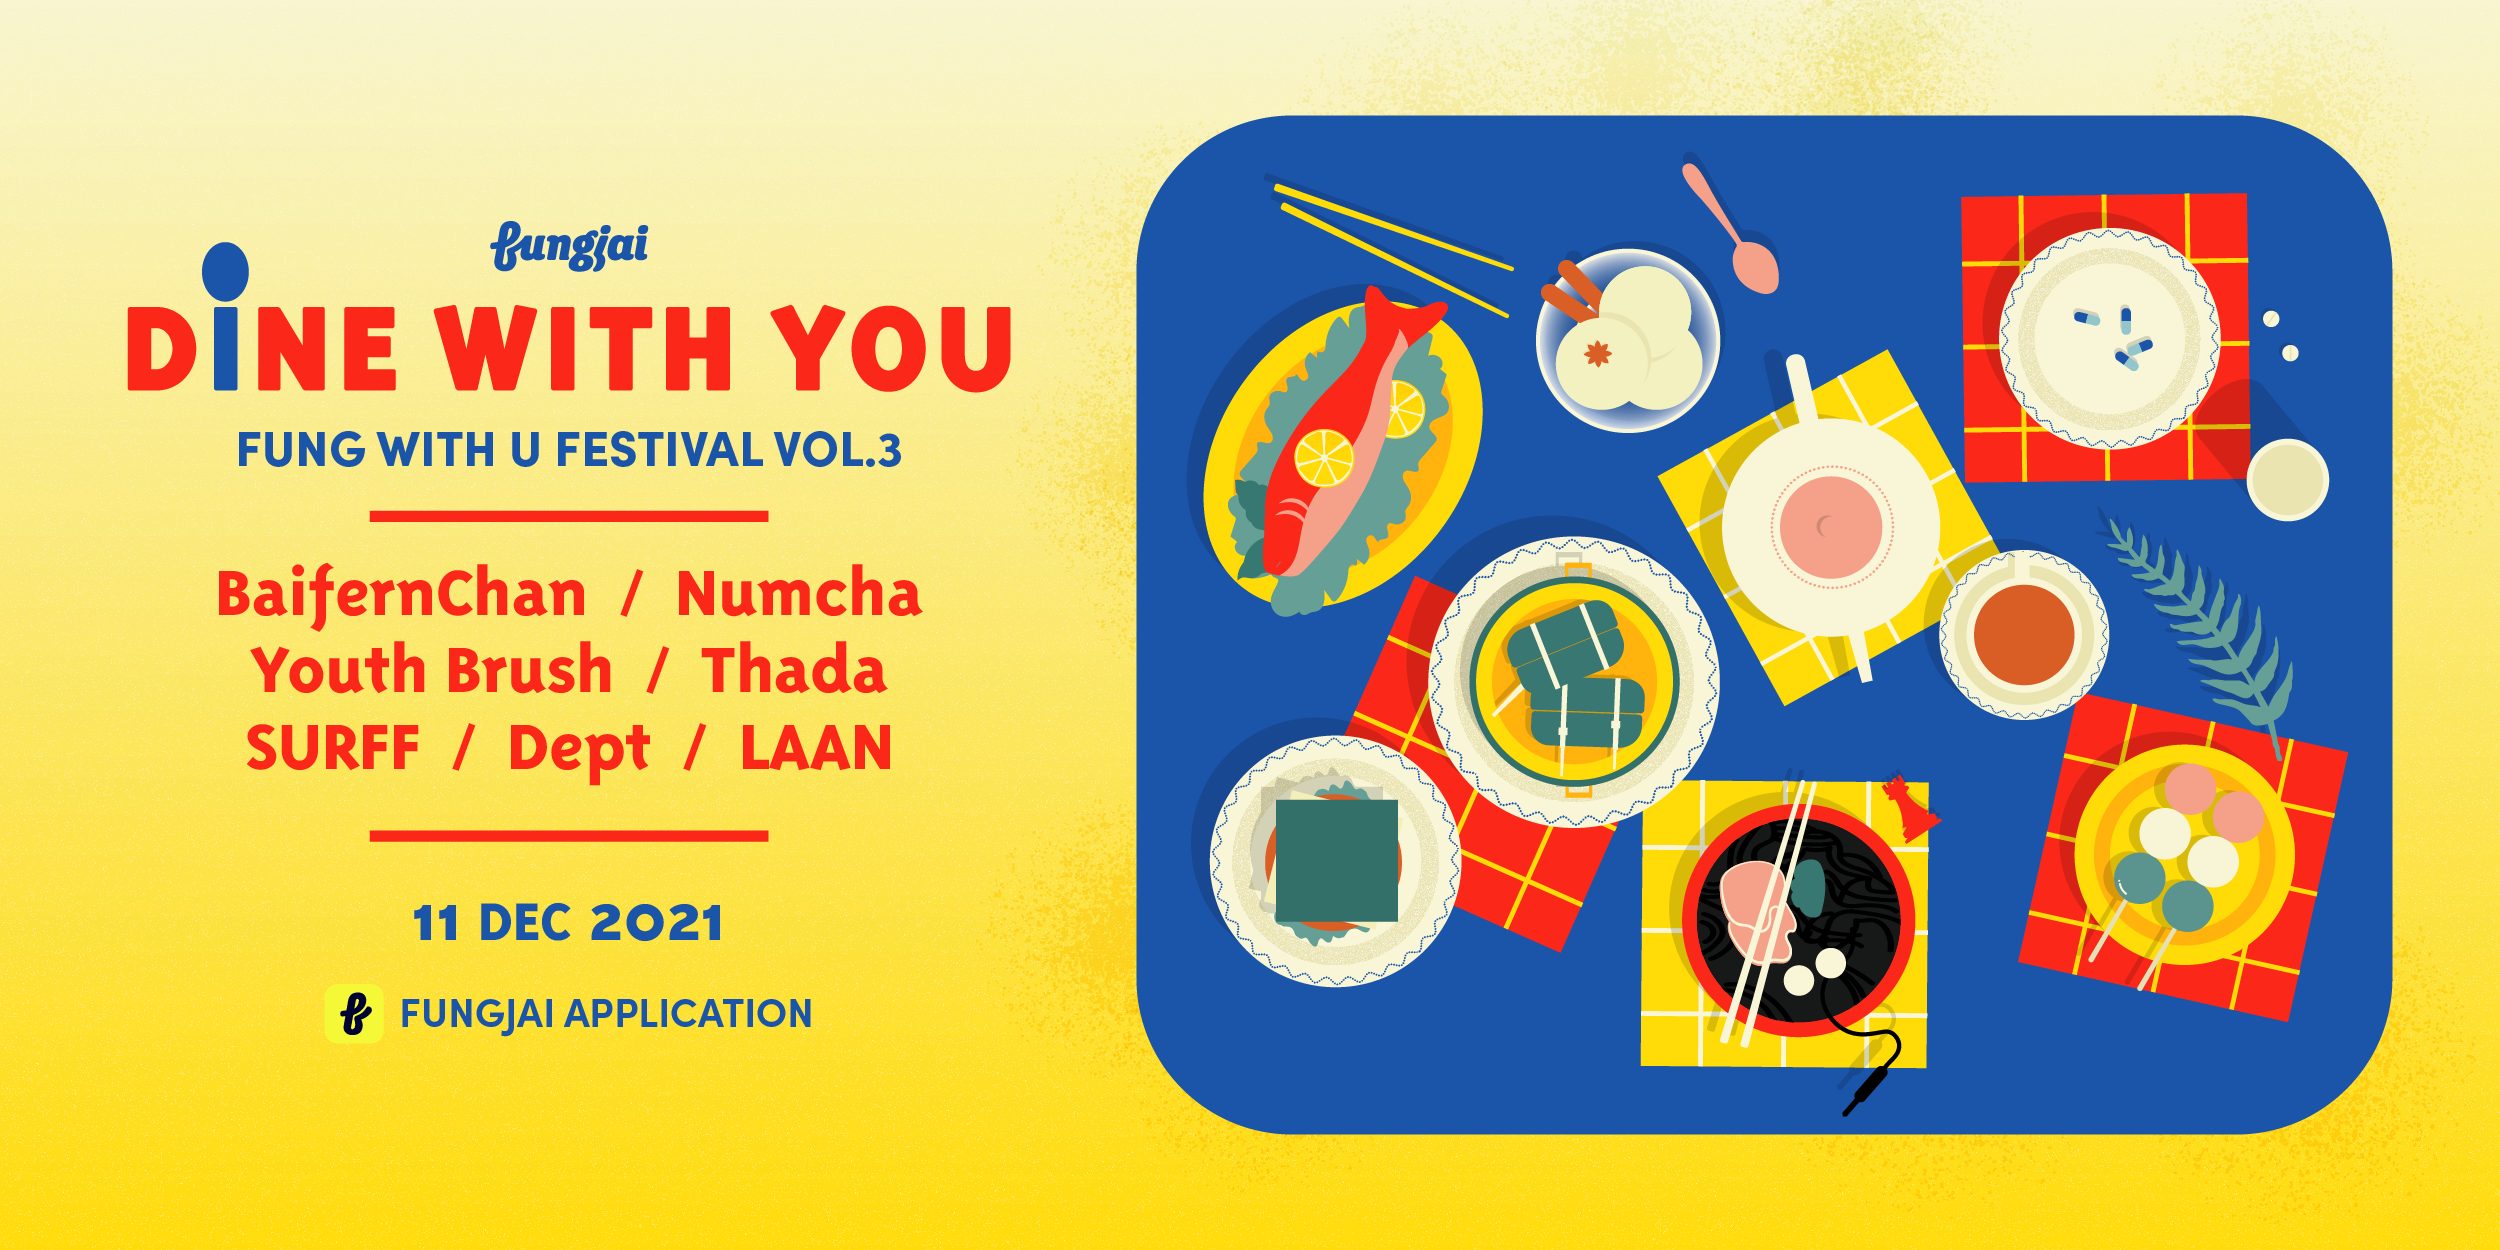 Fung With U Festival Vol.3 – Dine With You เสิร์ฟคอนเสิร์ตเสียงออนไลน์ส่งท้ายปี